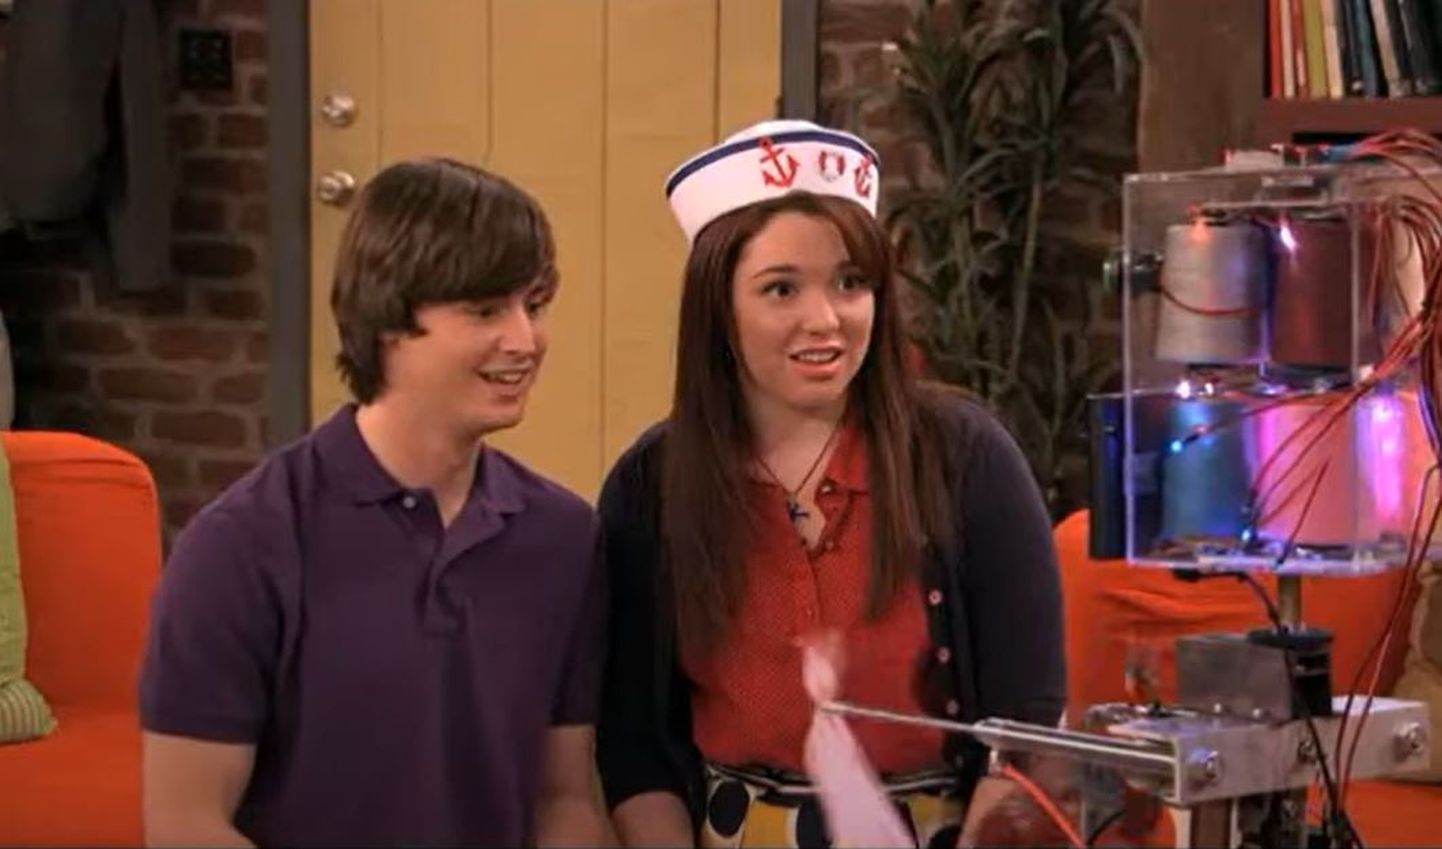 Endine näitleja Dan Benson (vasakul) mängis teismelisena Disney telesarjas.